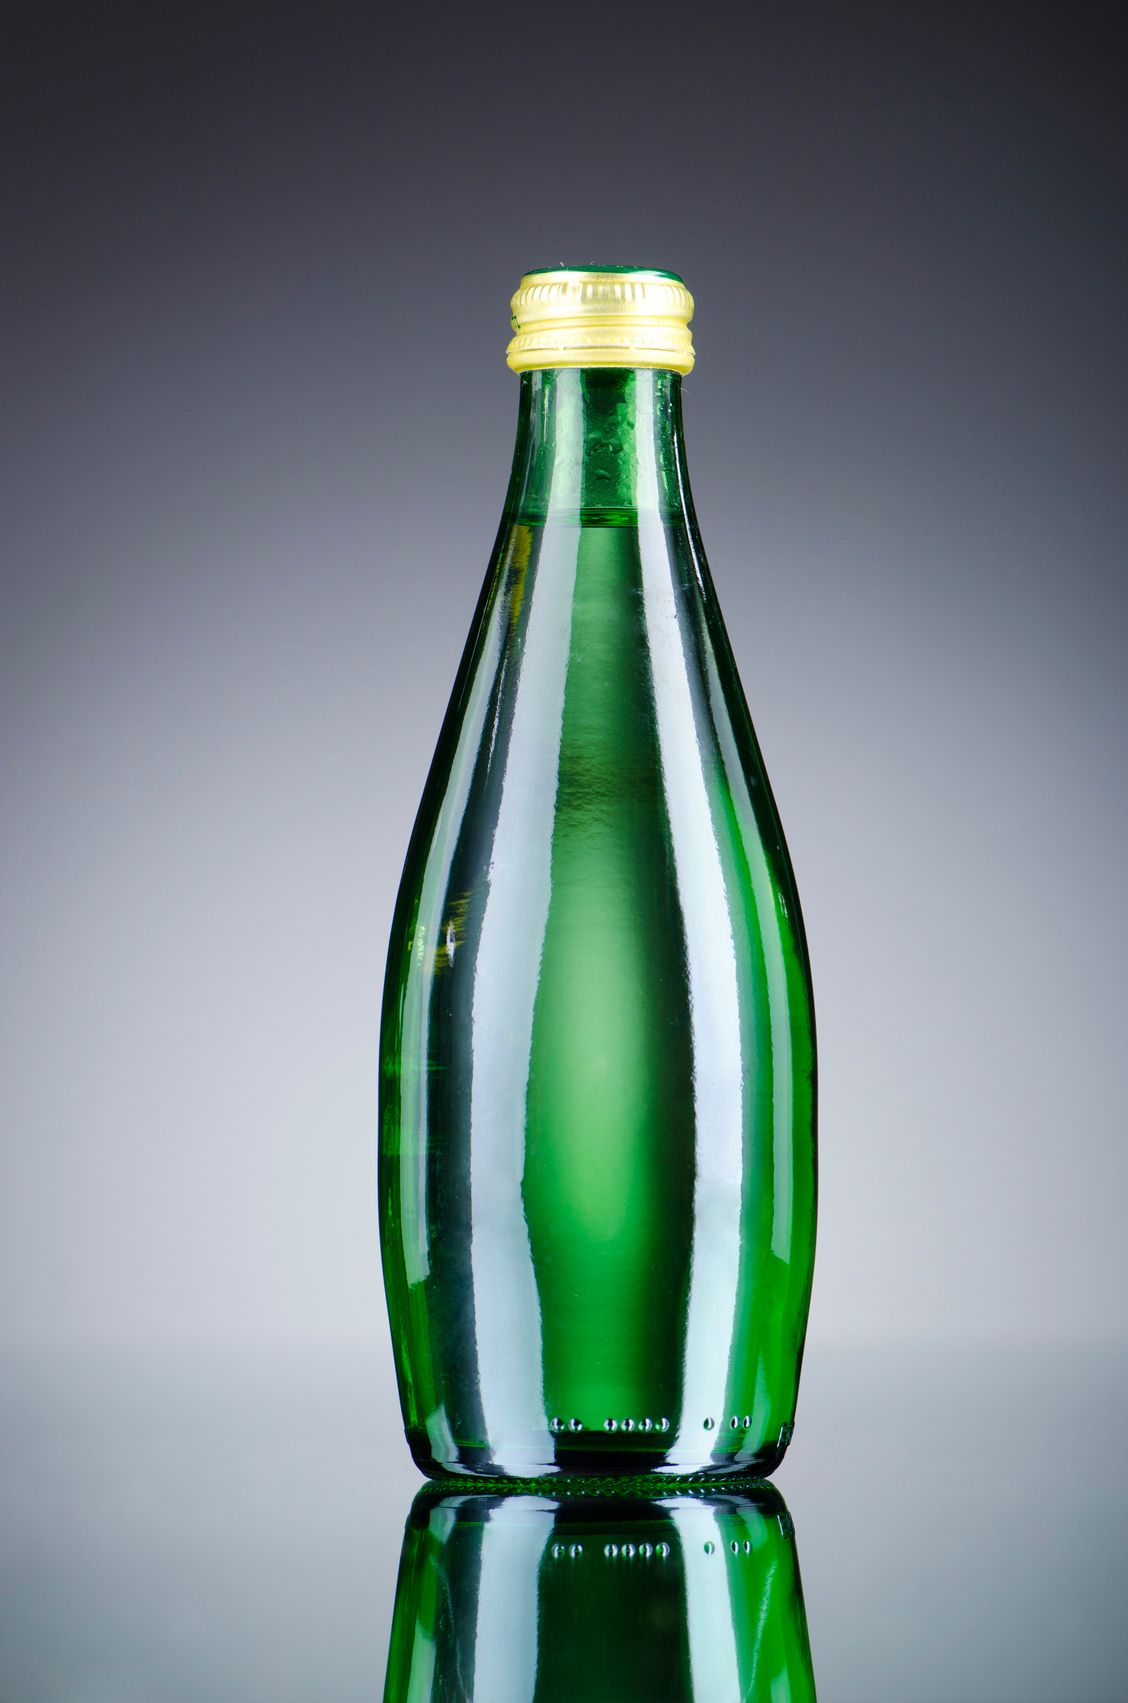 Вода в зеленой стеклянной бутылке. Зеленая бутылкаминеральной вды. В бутылке зеленый. Бутылка стекло 0,5 зеленая.